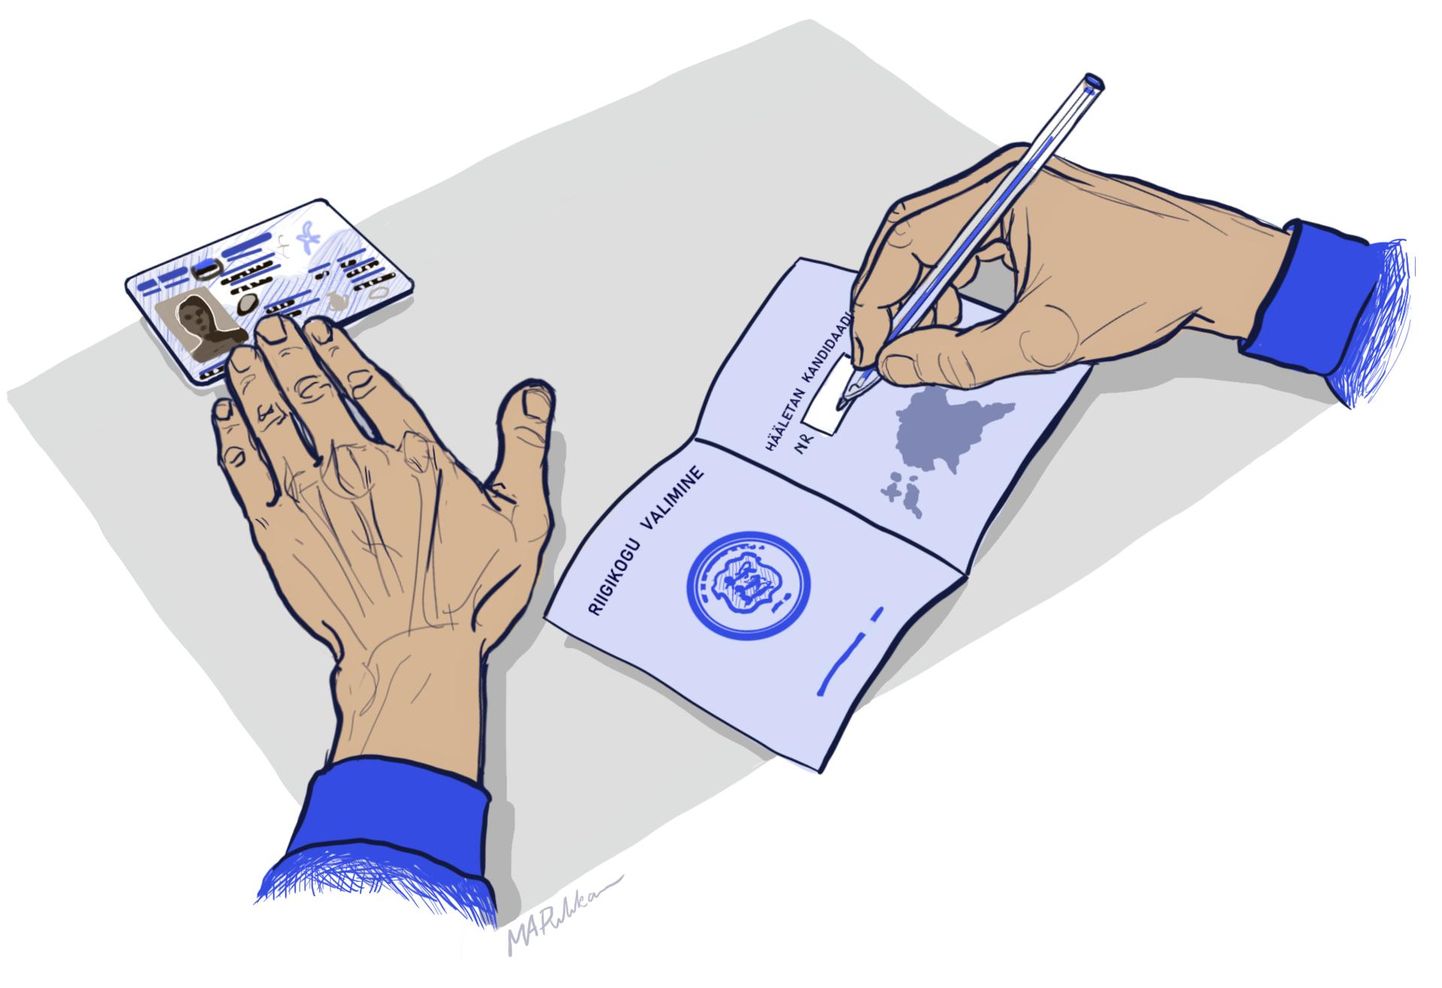 Vaatamata e-hääletuse üha suuremale populaarsusele eelistavad paljud inimesed tõendada valimisjaoskonnas ID-kaardi abil vaid oma isiku ning seejärel täita ikkagi pabersedeli.